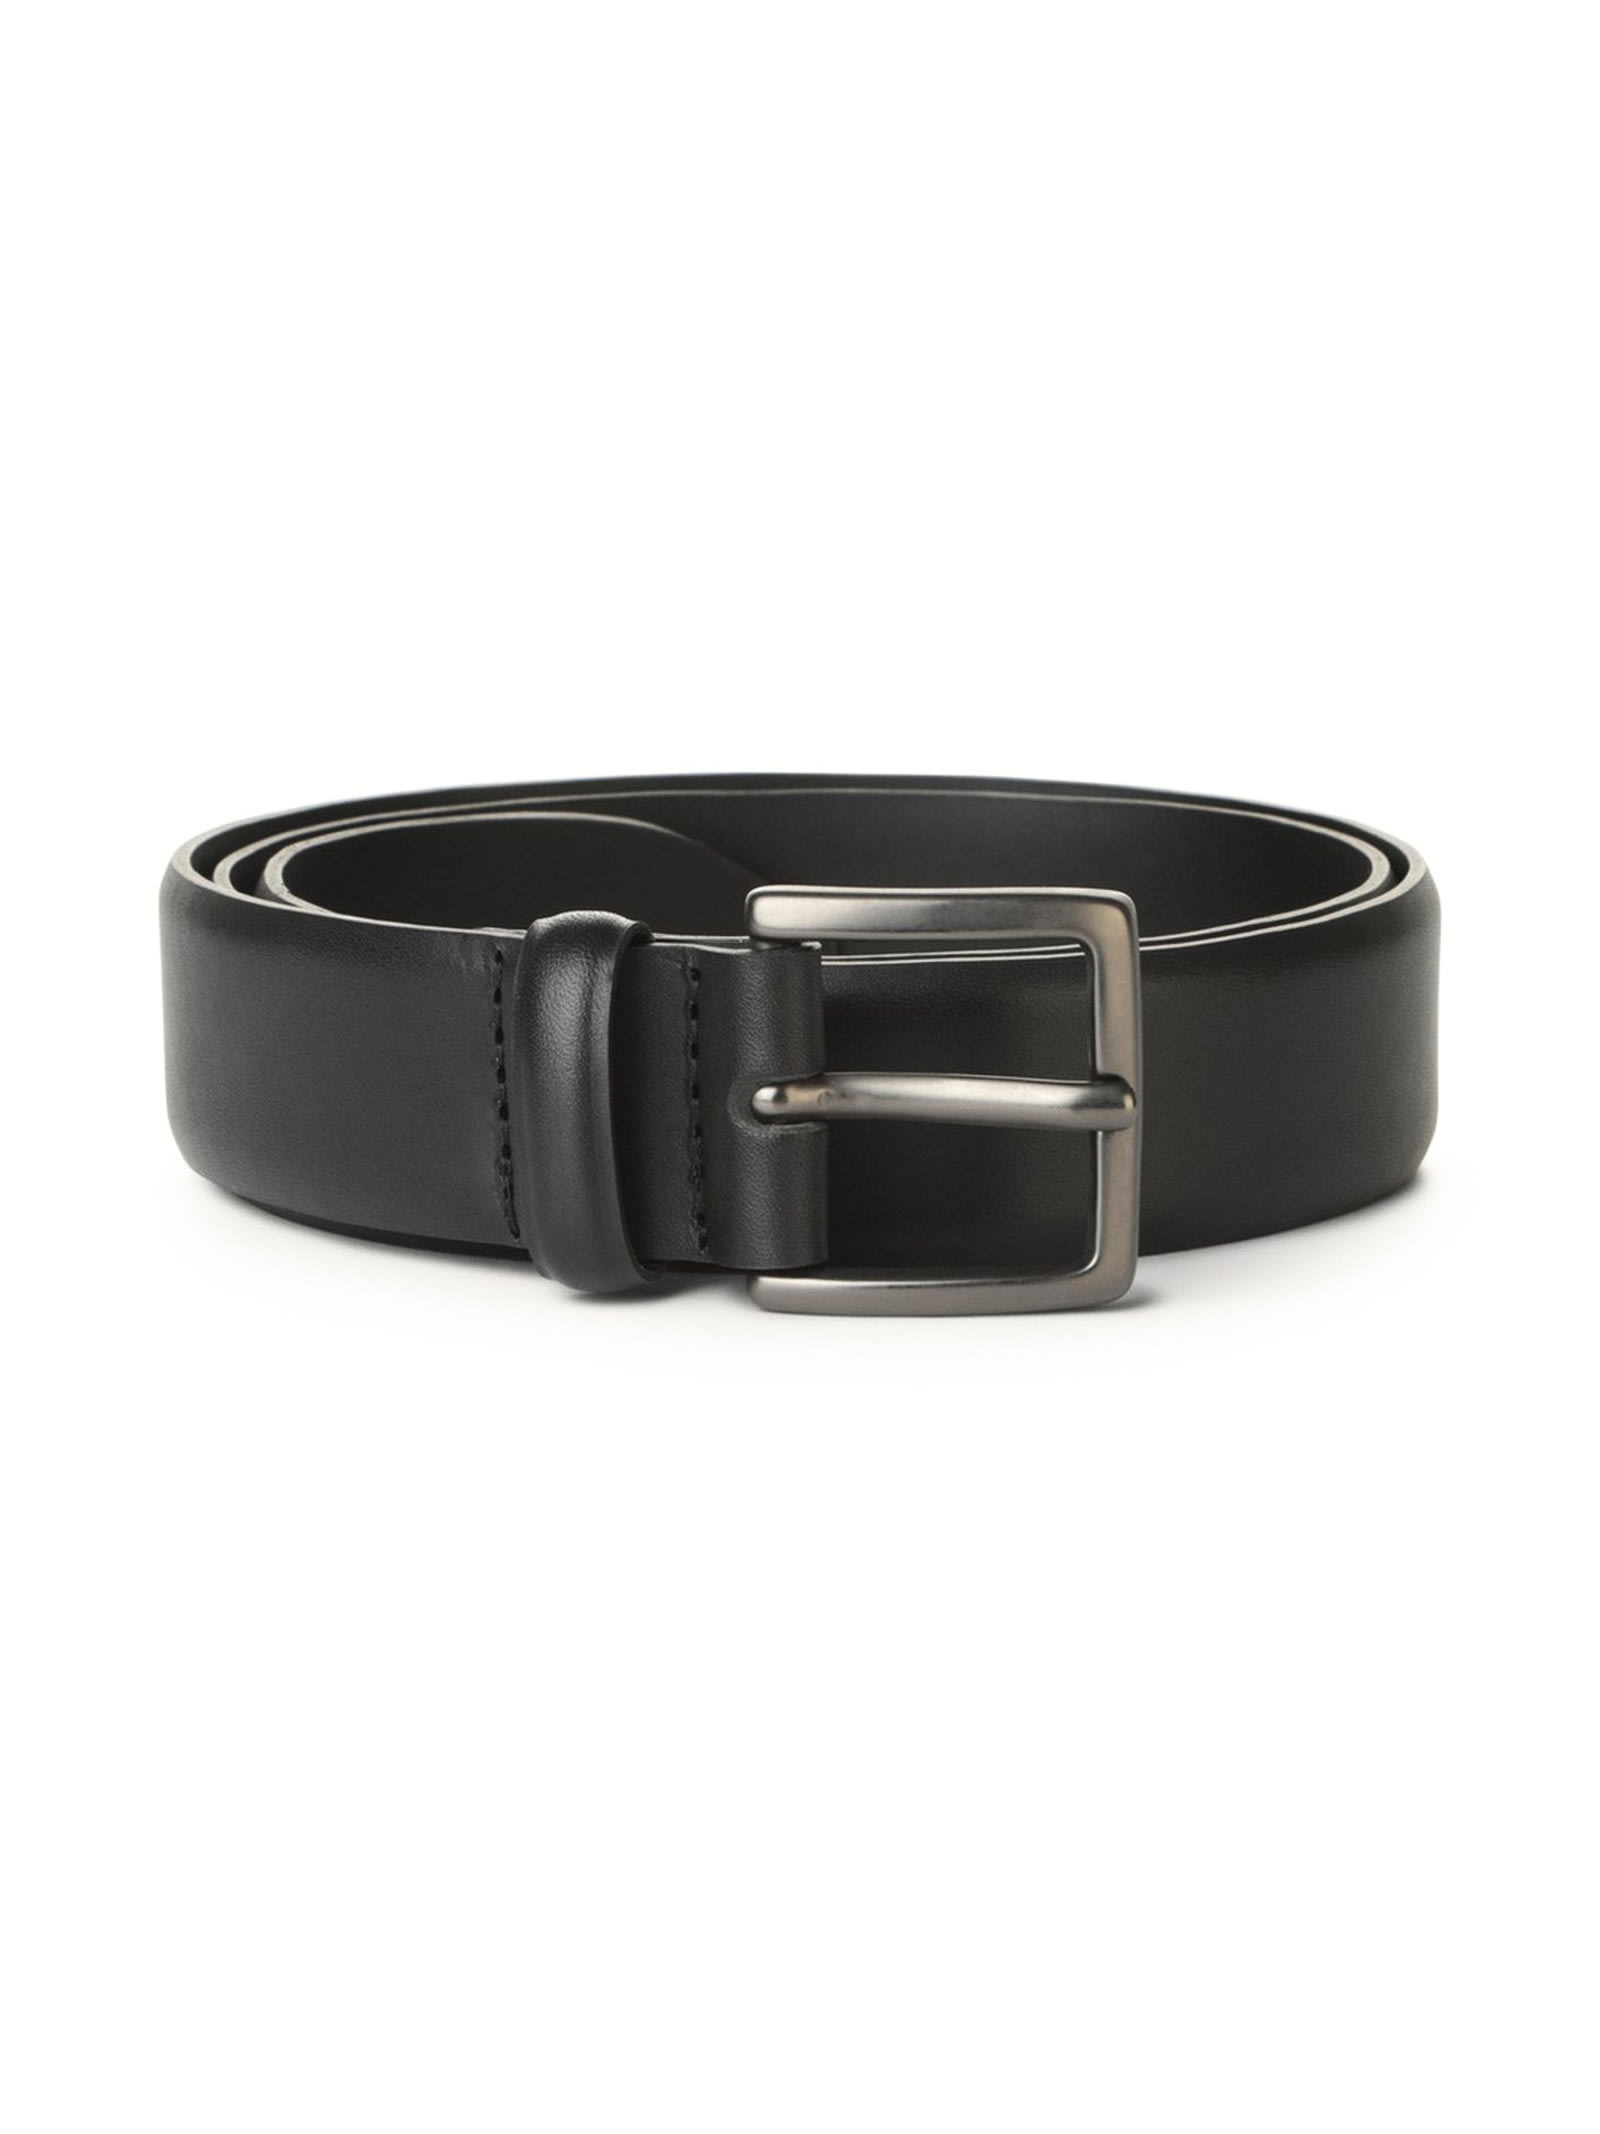 Shop Orciani Monaco Black Leather Belt